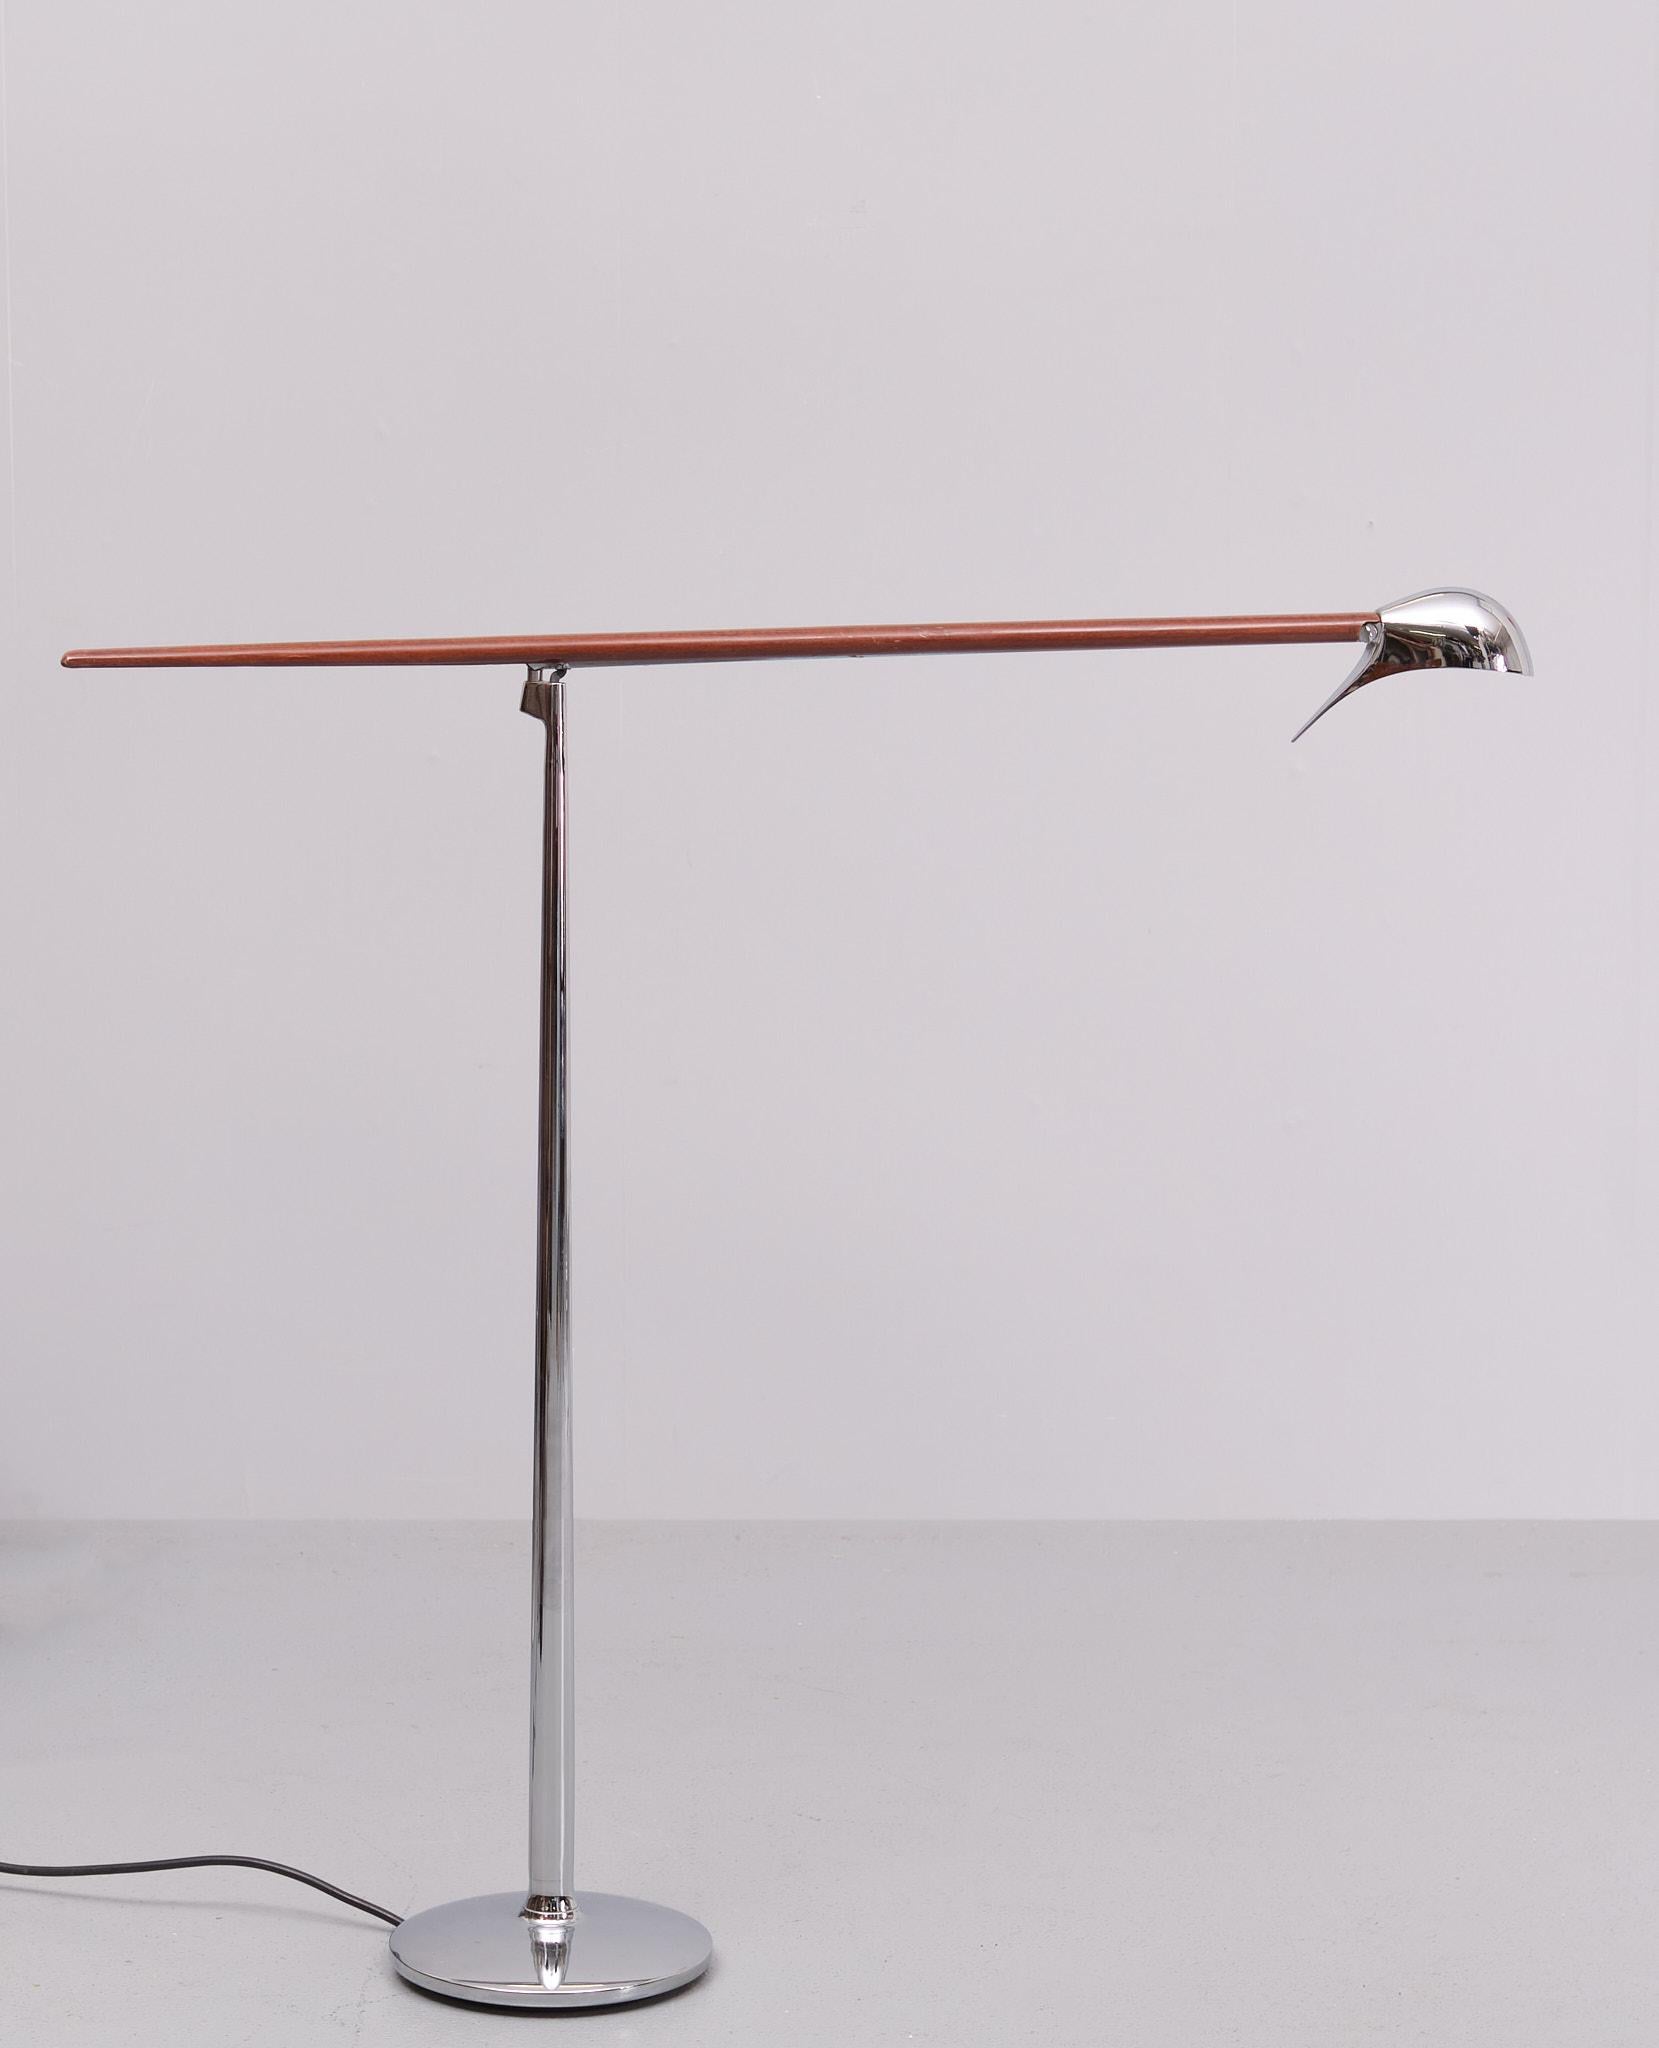 Chrome Jorge Pensi - Belux - Floor lamp  model - Bluebird  1980s Spain  For Sale